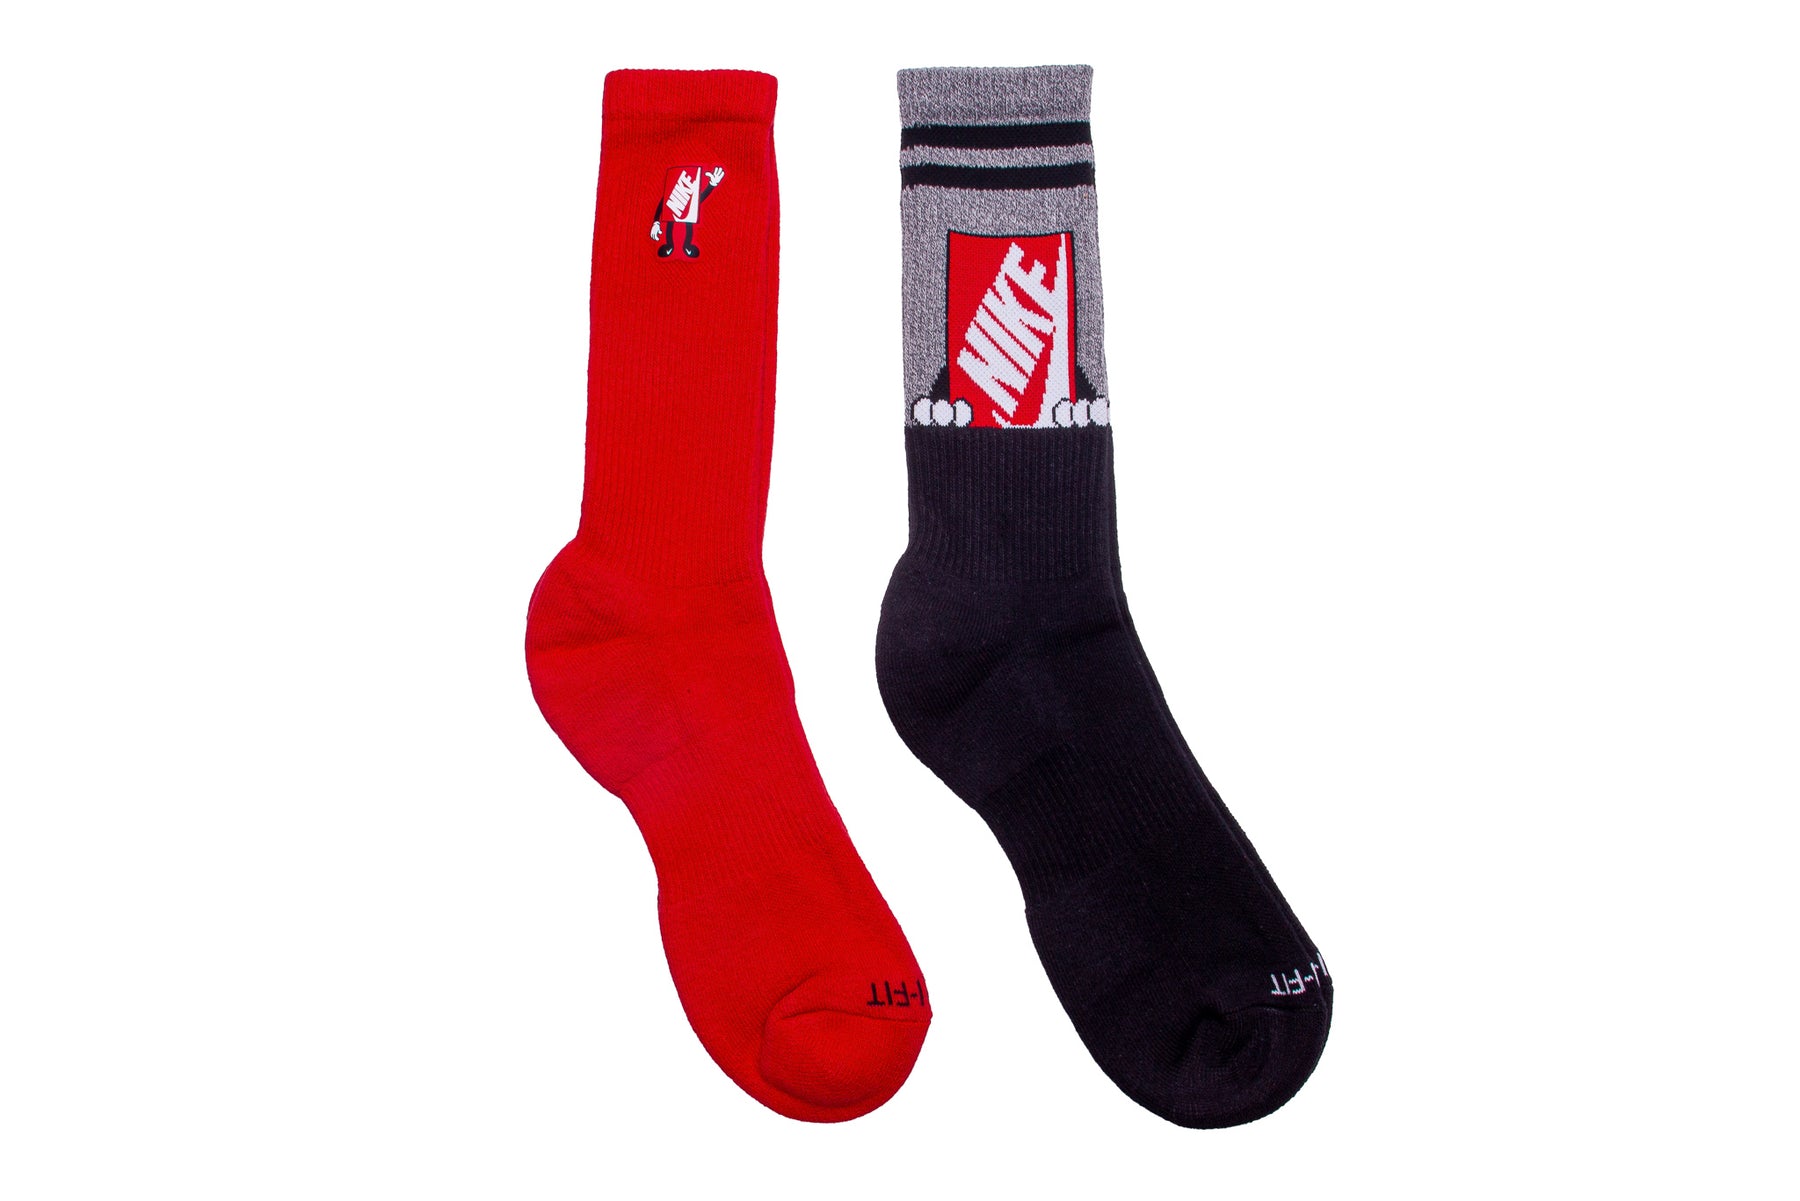 Nike Everyday Plus Socks "Black & Red"